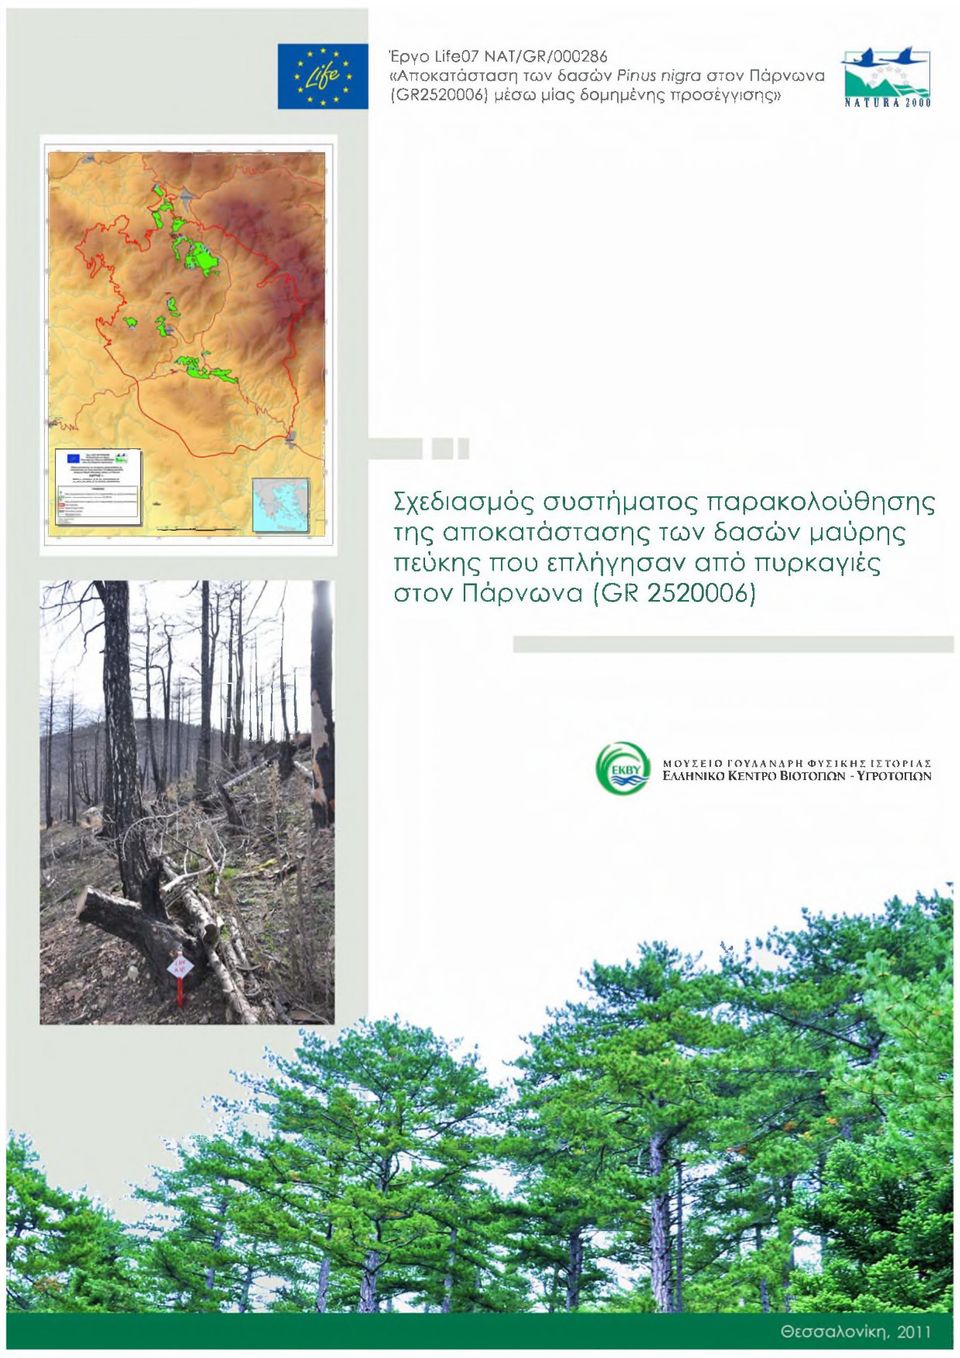 αποκατάστασης των δασών μαύρης πεύκης που επλήγησαν από πυρκαγιές στον Πάρνωνα (GR